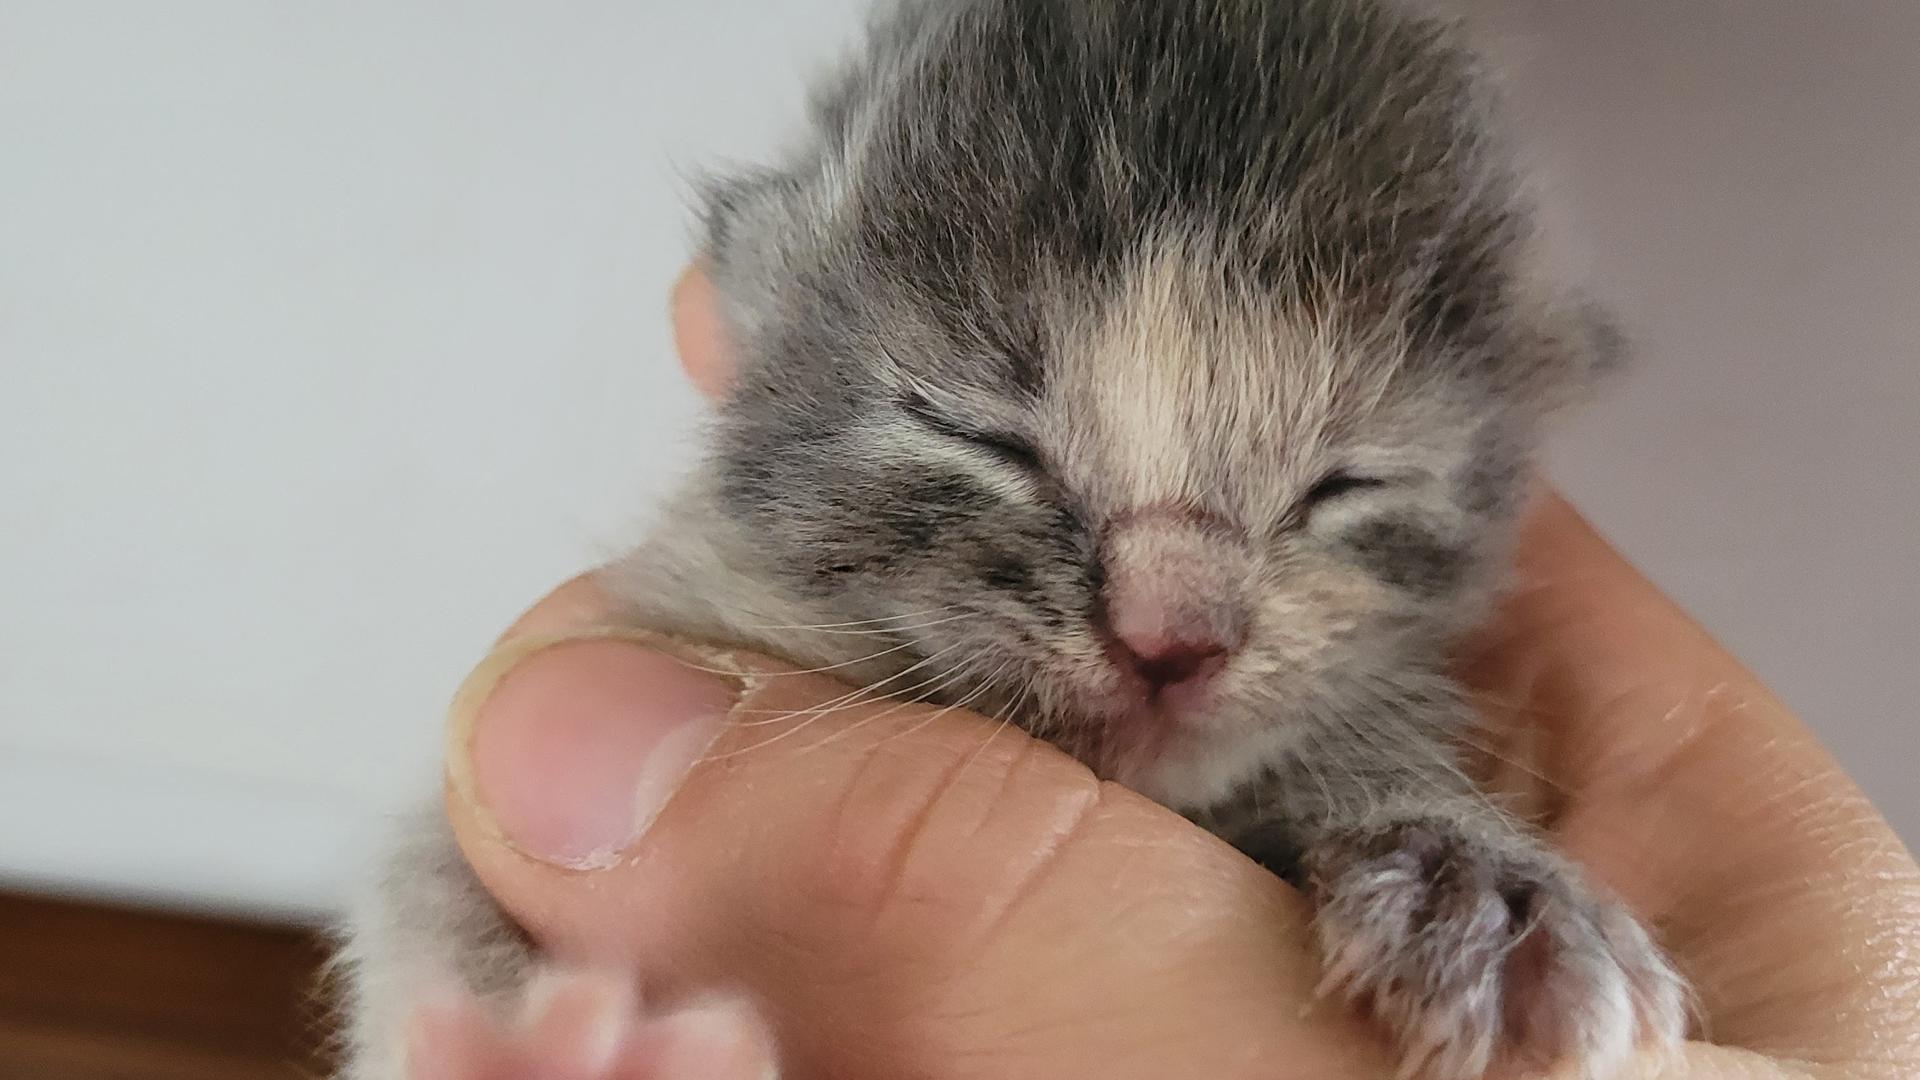 Eine Hand hält ein Katzenbaby,dessen Augen noch geschlossen sind.